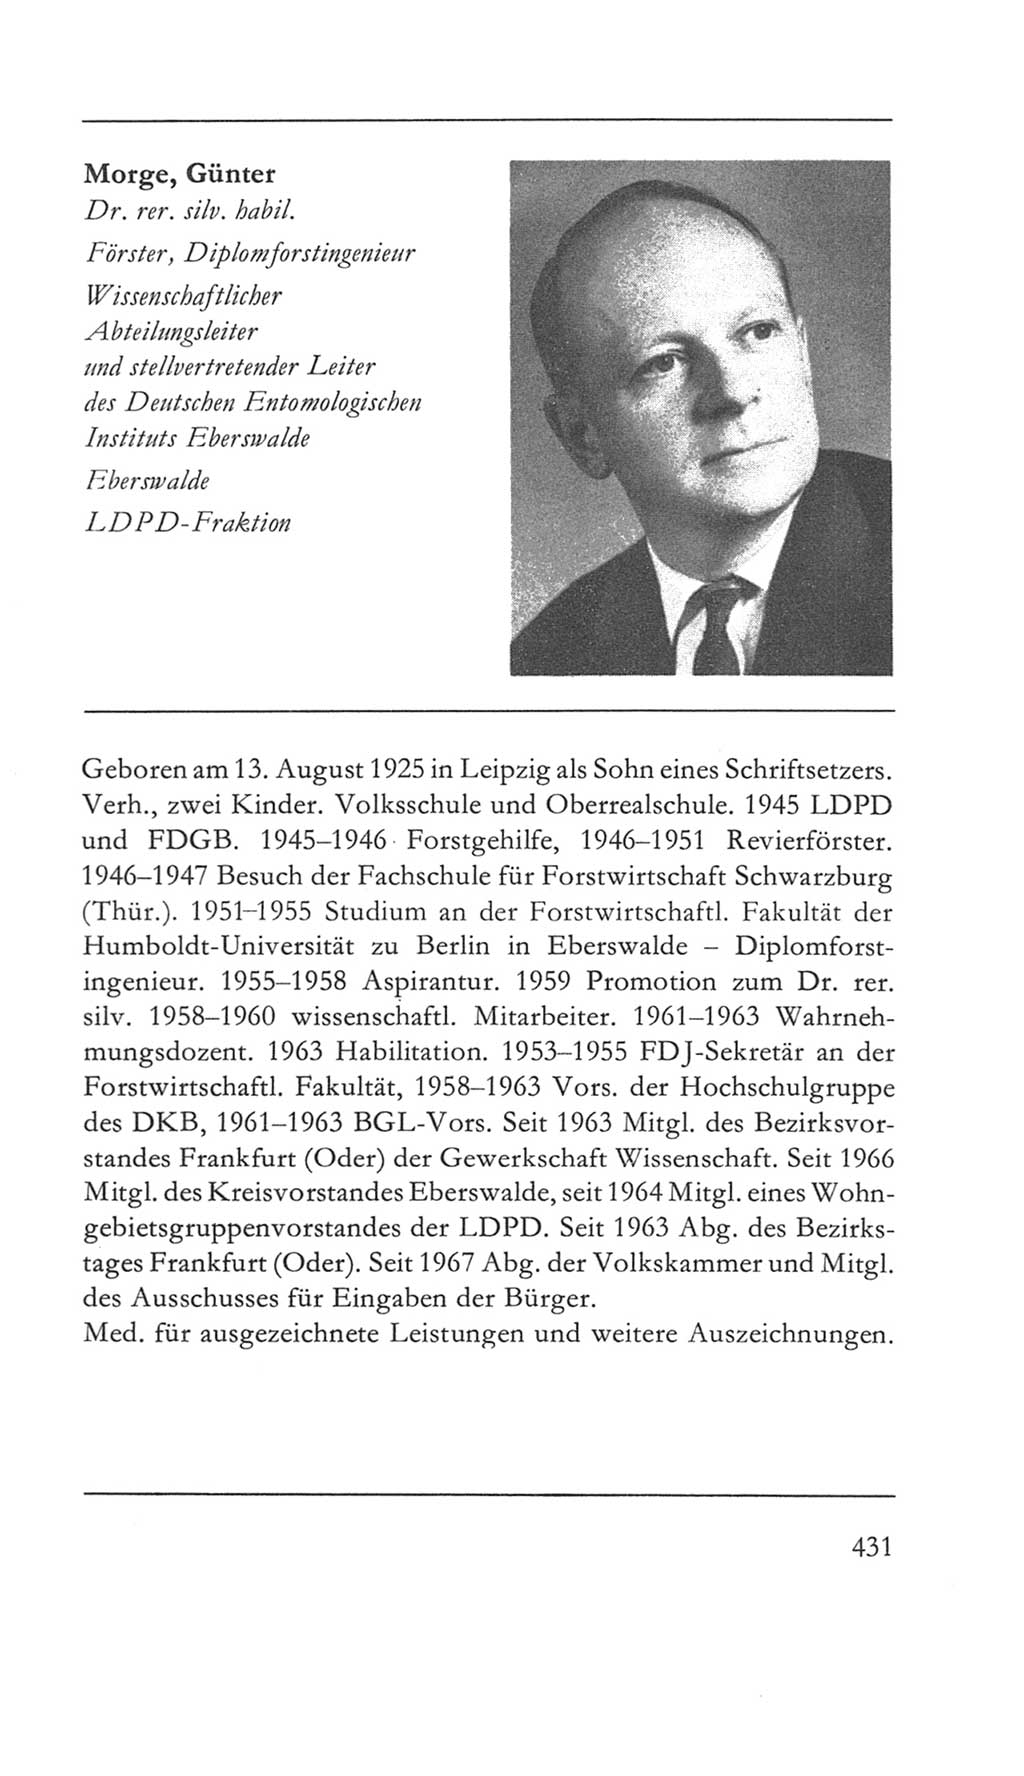 Volkskammer (VK) der Deutschen Demokratischen Republik (DDR) 5. Wahlperiode 1967-1971, Seite 431 (VK. DDR 5. WP. 1967-1971, S. 431)